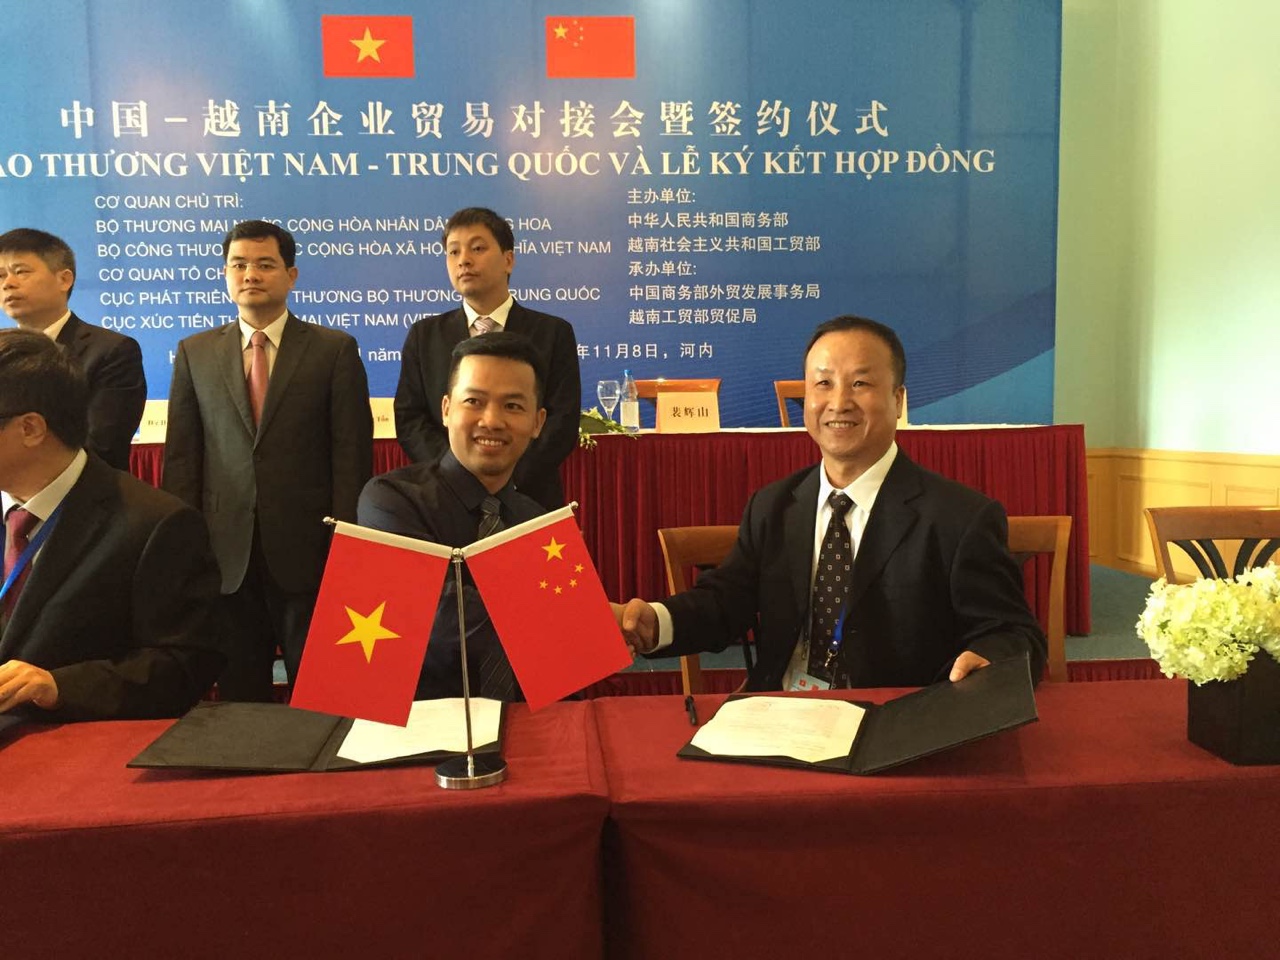 Dương Minh ký thành công hợp đồng vận chuyển hàng hóa với công ty quốc danh Trung Quốc  